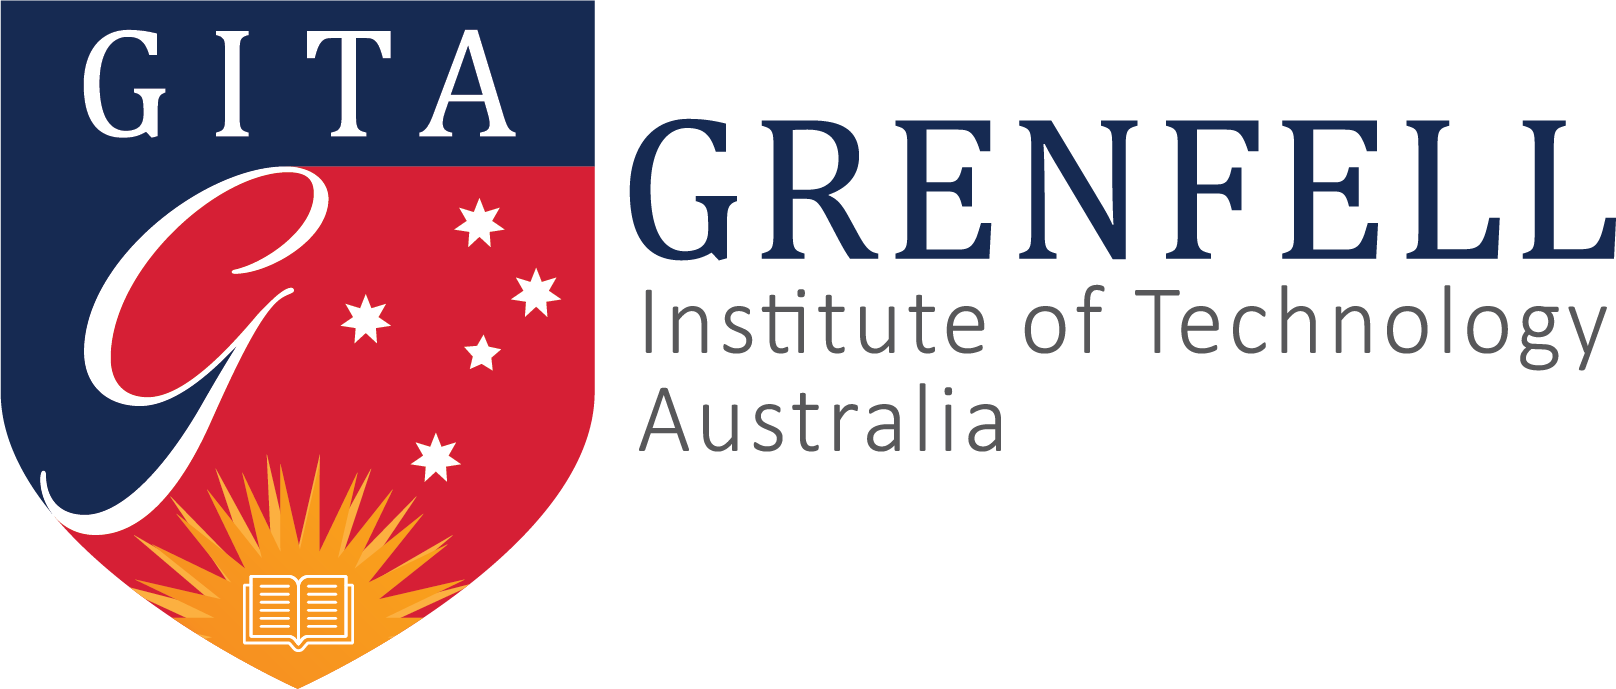 Grenfell Institute of Technology Australia